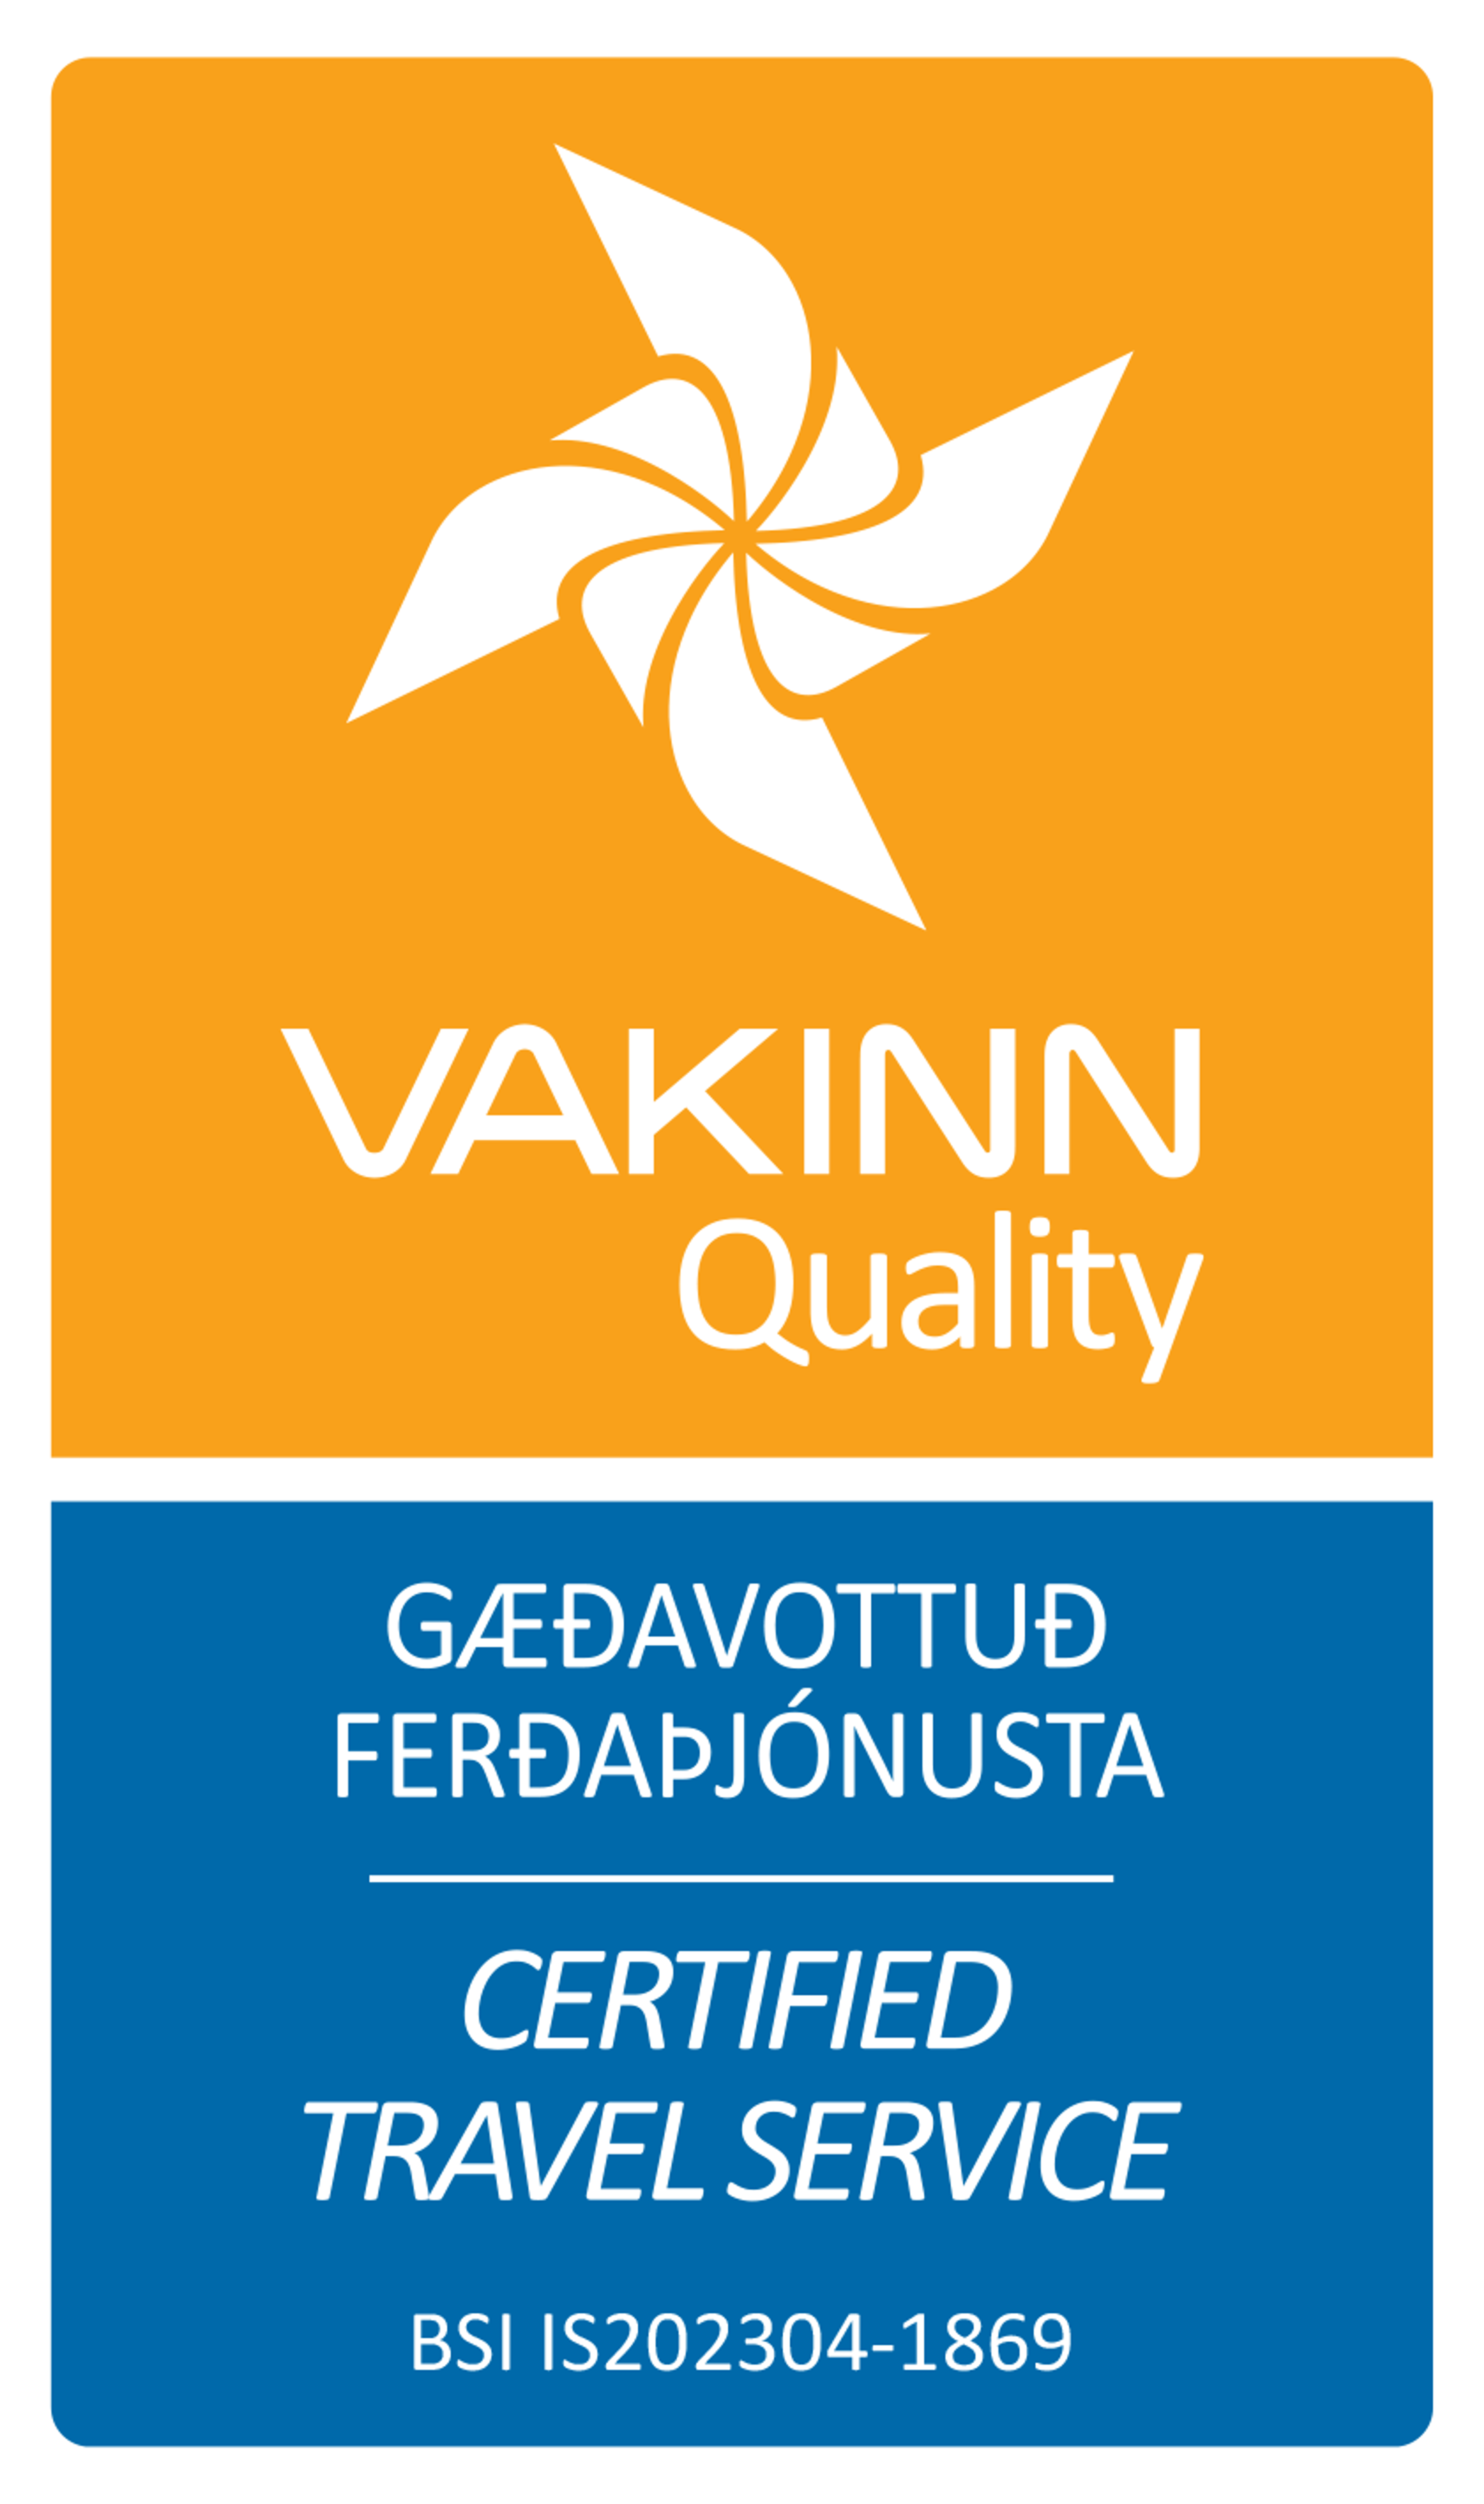 Vakinn Certification for Travel Service